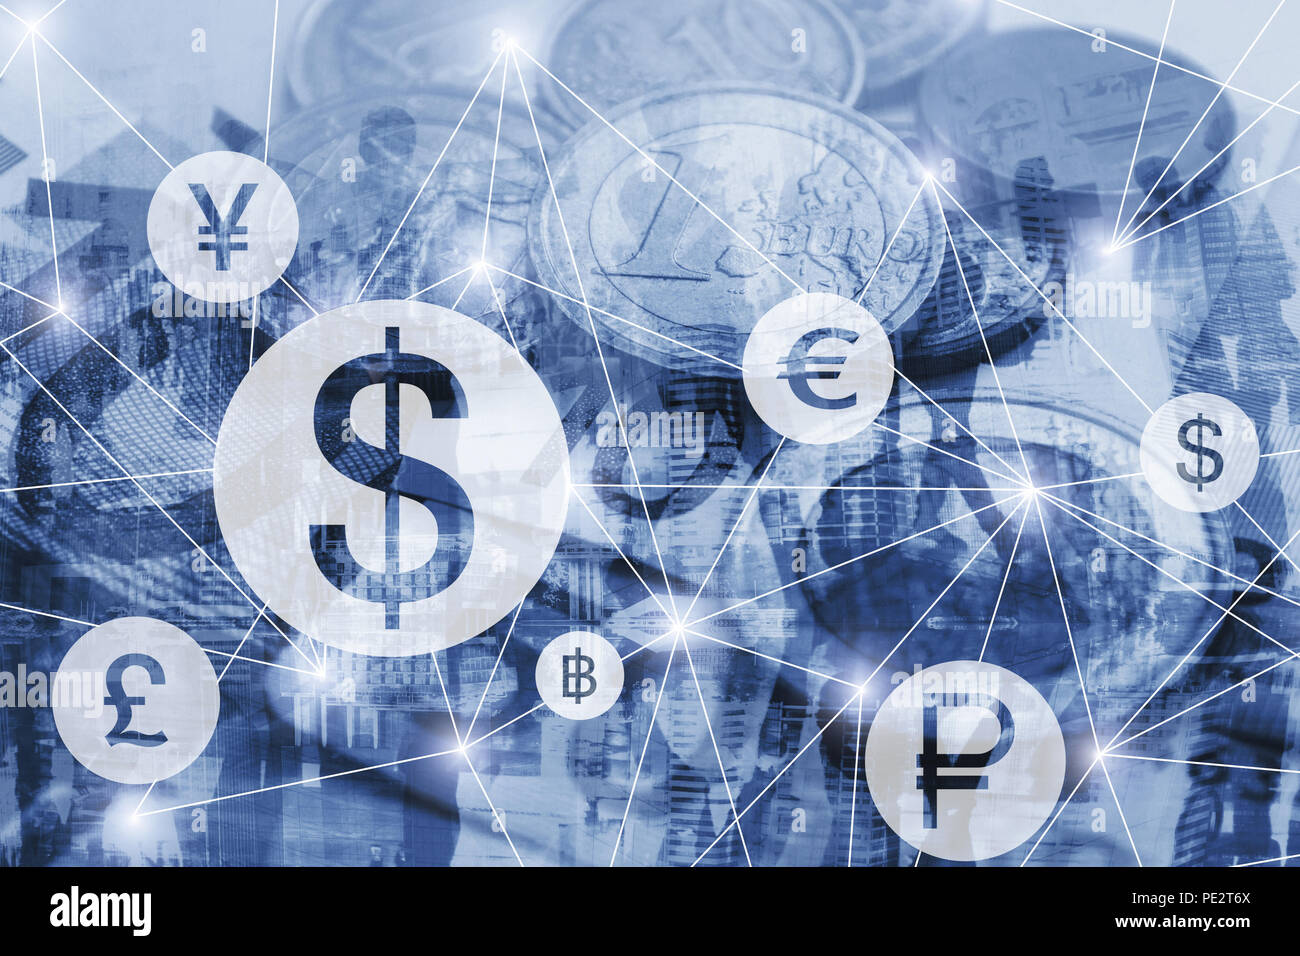 Geldwechsel Konzept, Symbole der verschiedenen ausländischen Währungen verbunden im virtuellen Netzwerk Interface, Dollar, Euro und Pfund Stockfoto